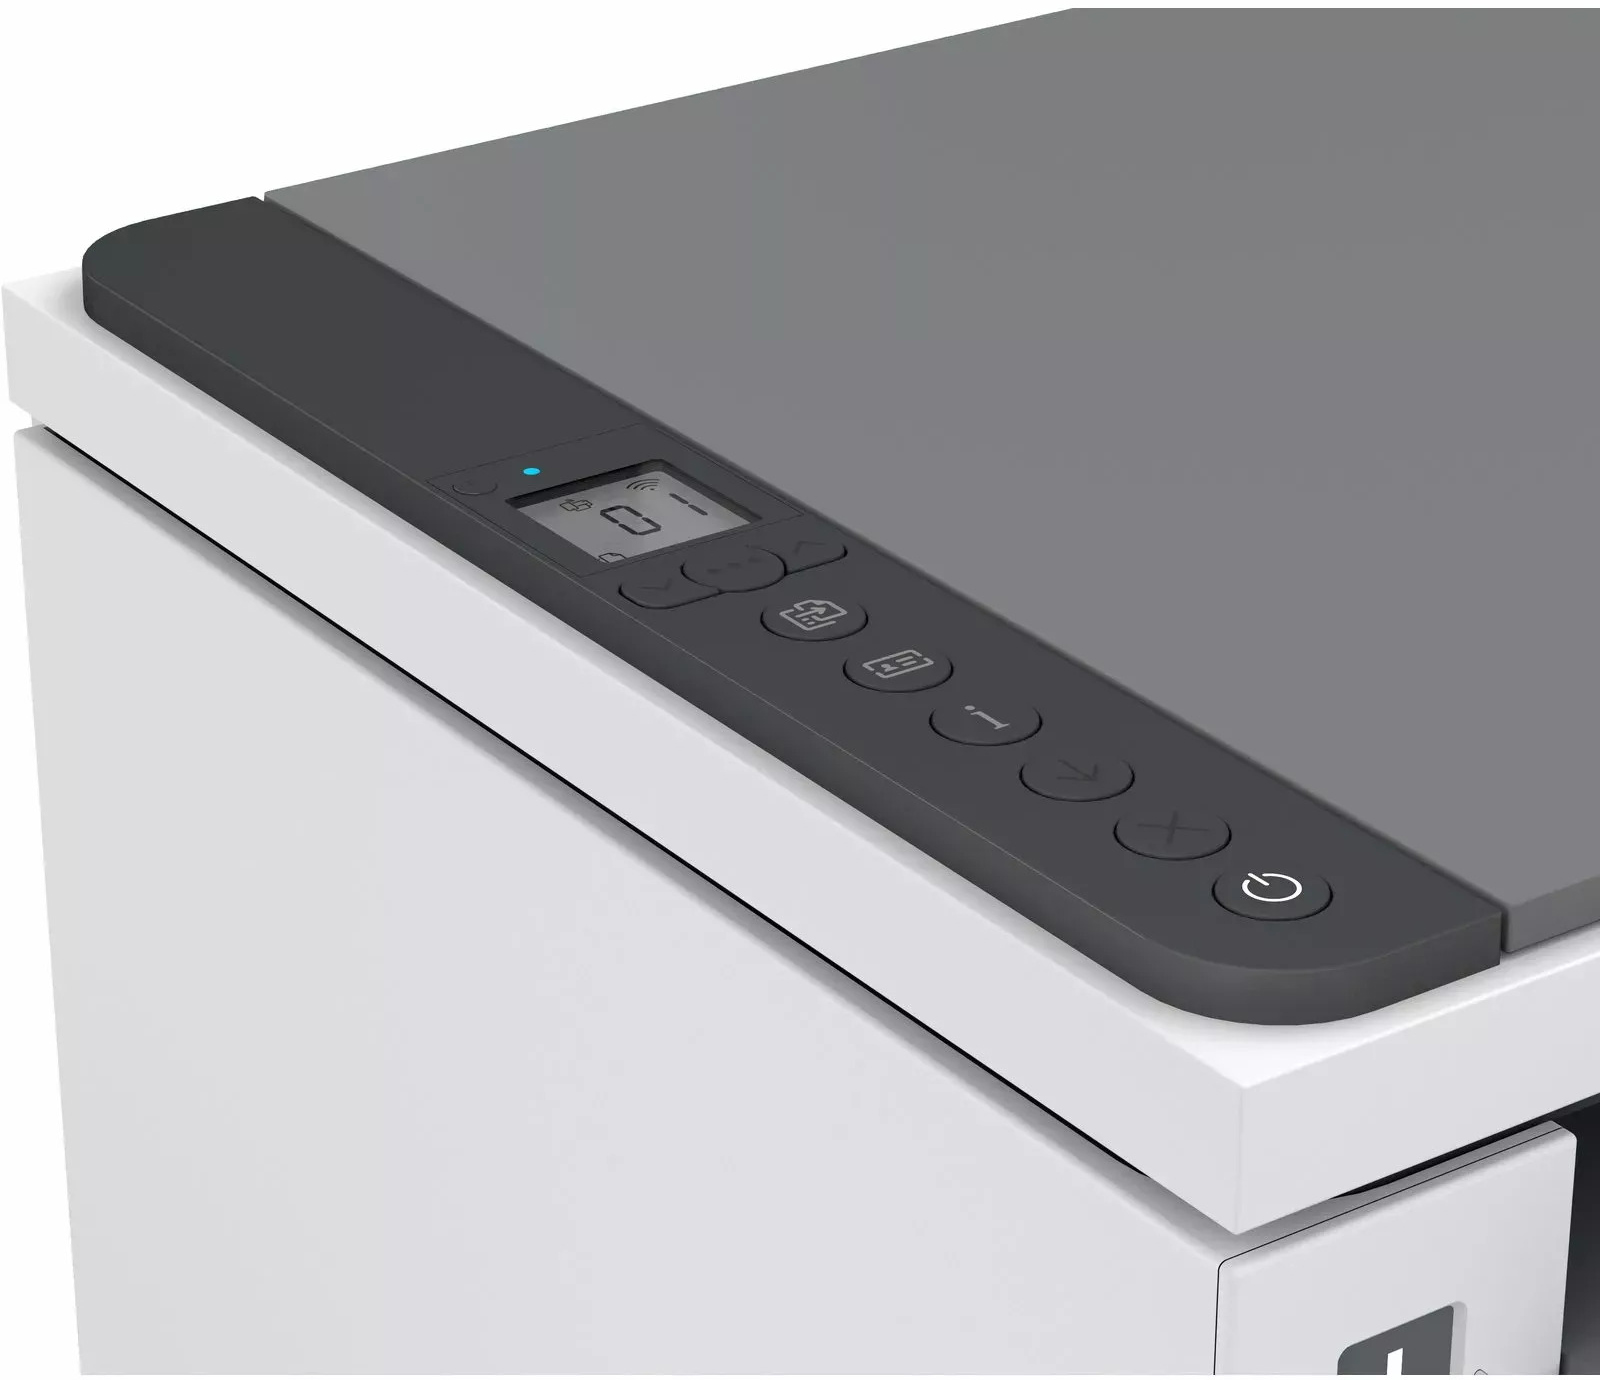 HP - Impresora Láser HP LaserJet Tank 2604dw All-In-ONE Wi-Fi